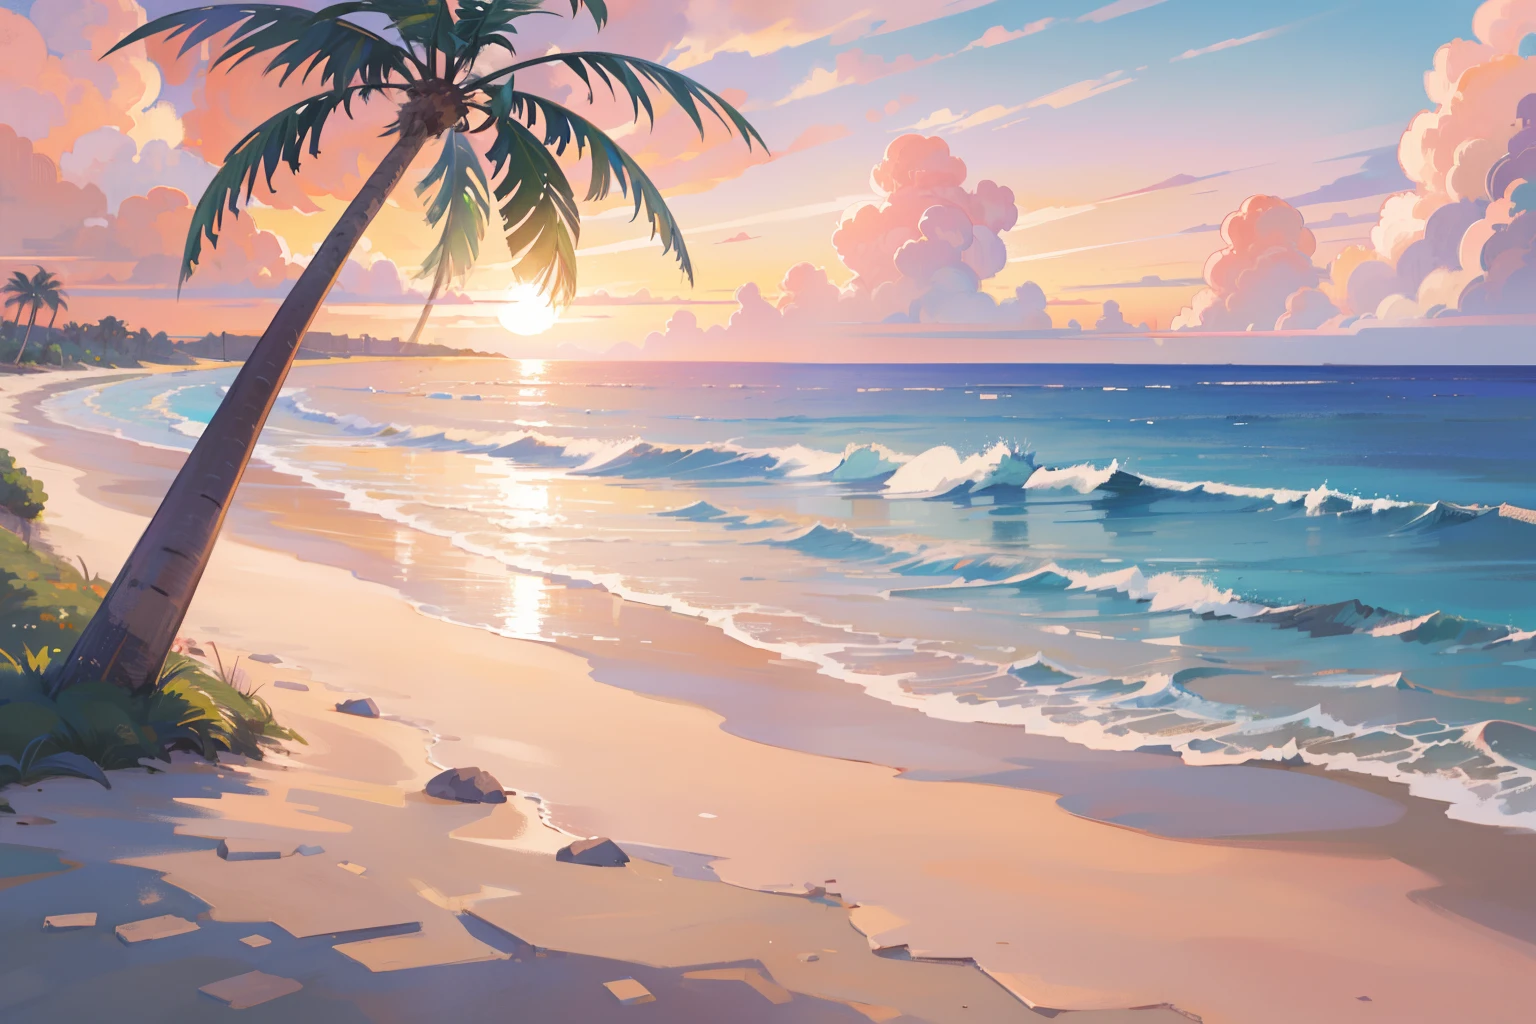 (шедевр), Лучшее качество, сверхвысокое разрешение, красивый пейзаж, подробные декорации, (теплый пастельный цвет), пляж, colorful пляж, розовый песок, Пальма, море, закат